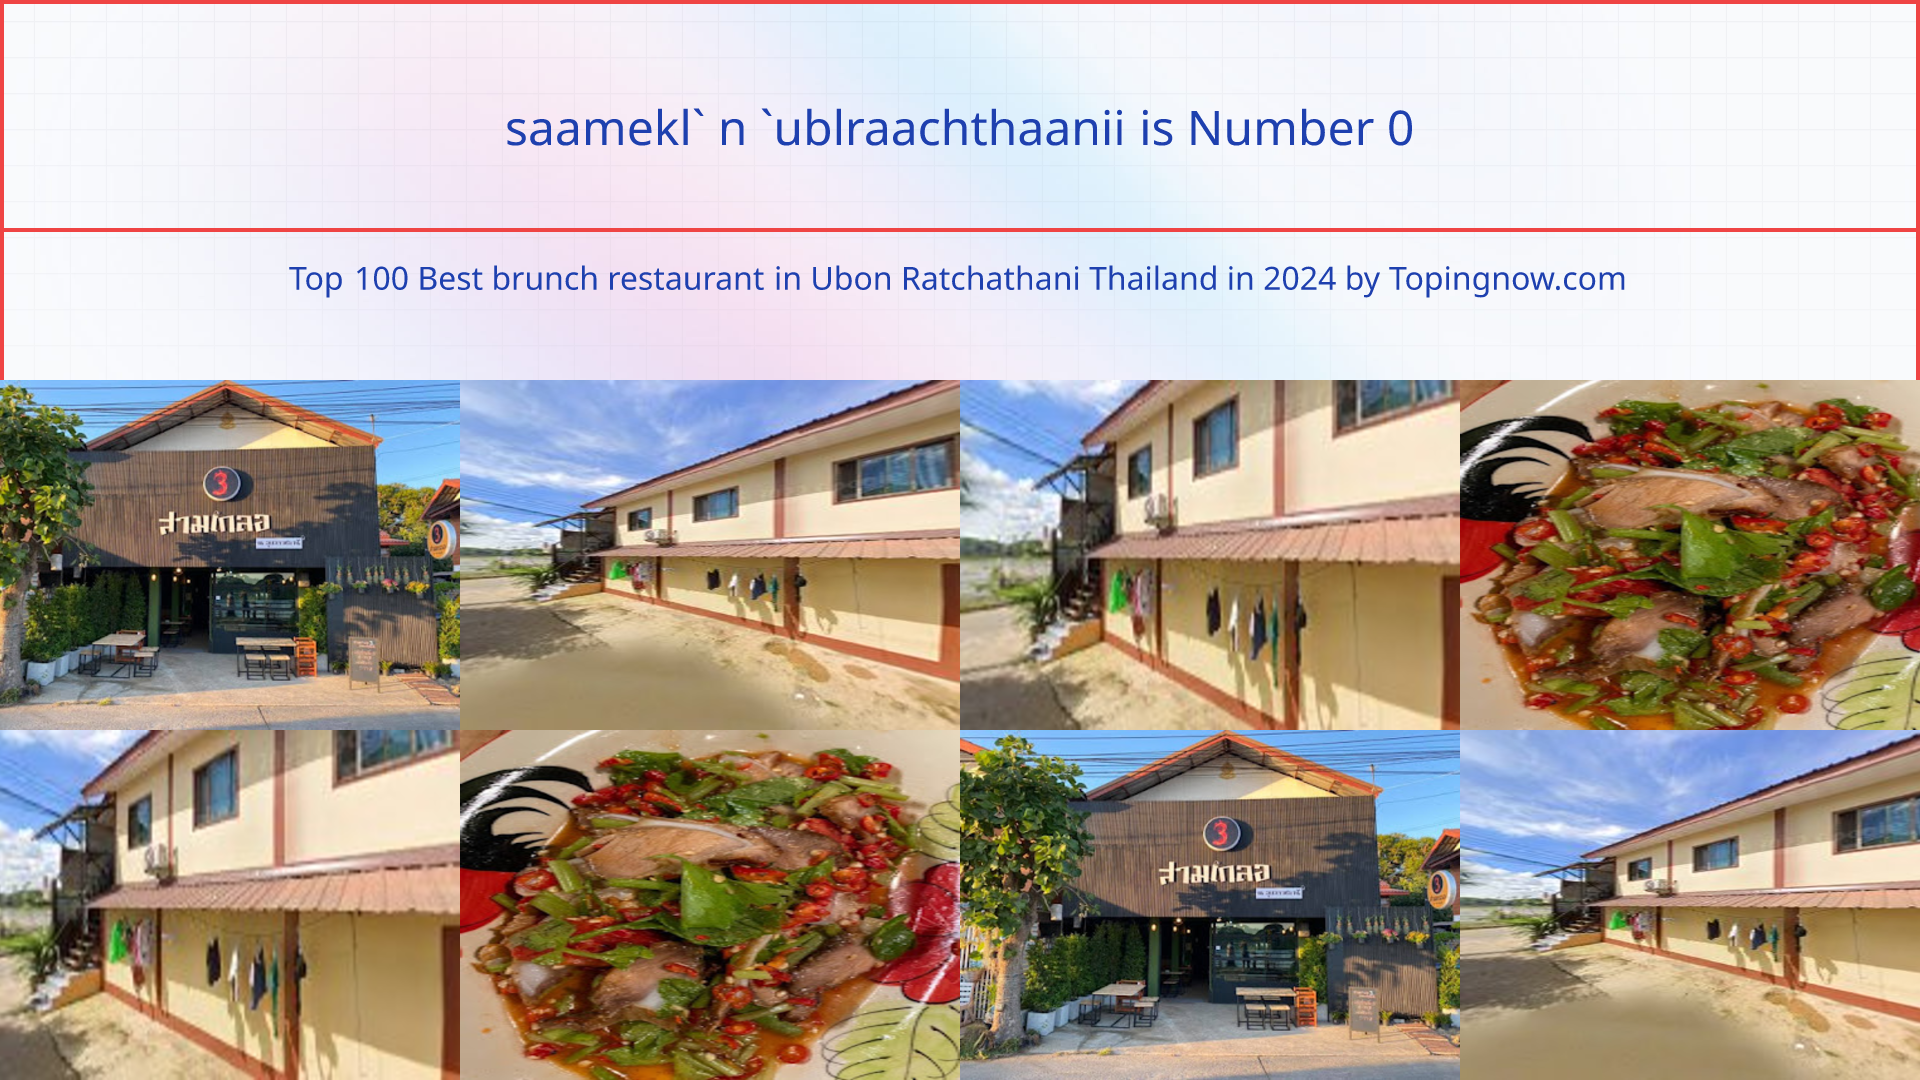 saamekl` n `ublraachthaanii: Top 100 Best brunch restaurant in Ubon Ratchathani Thailand in 2024